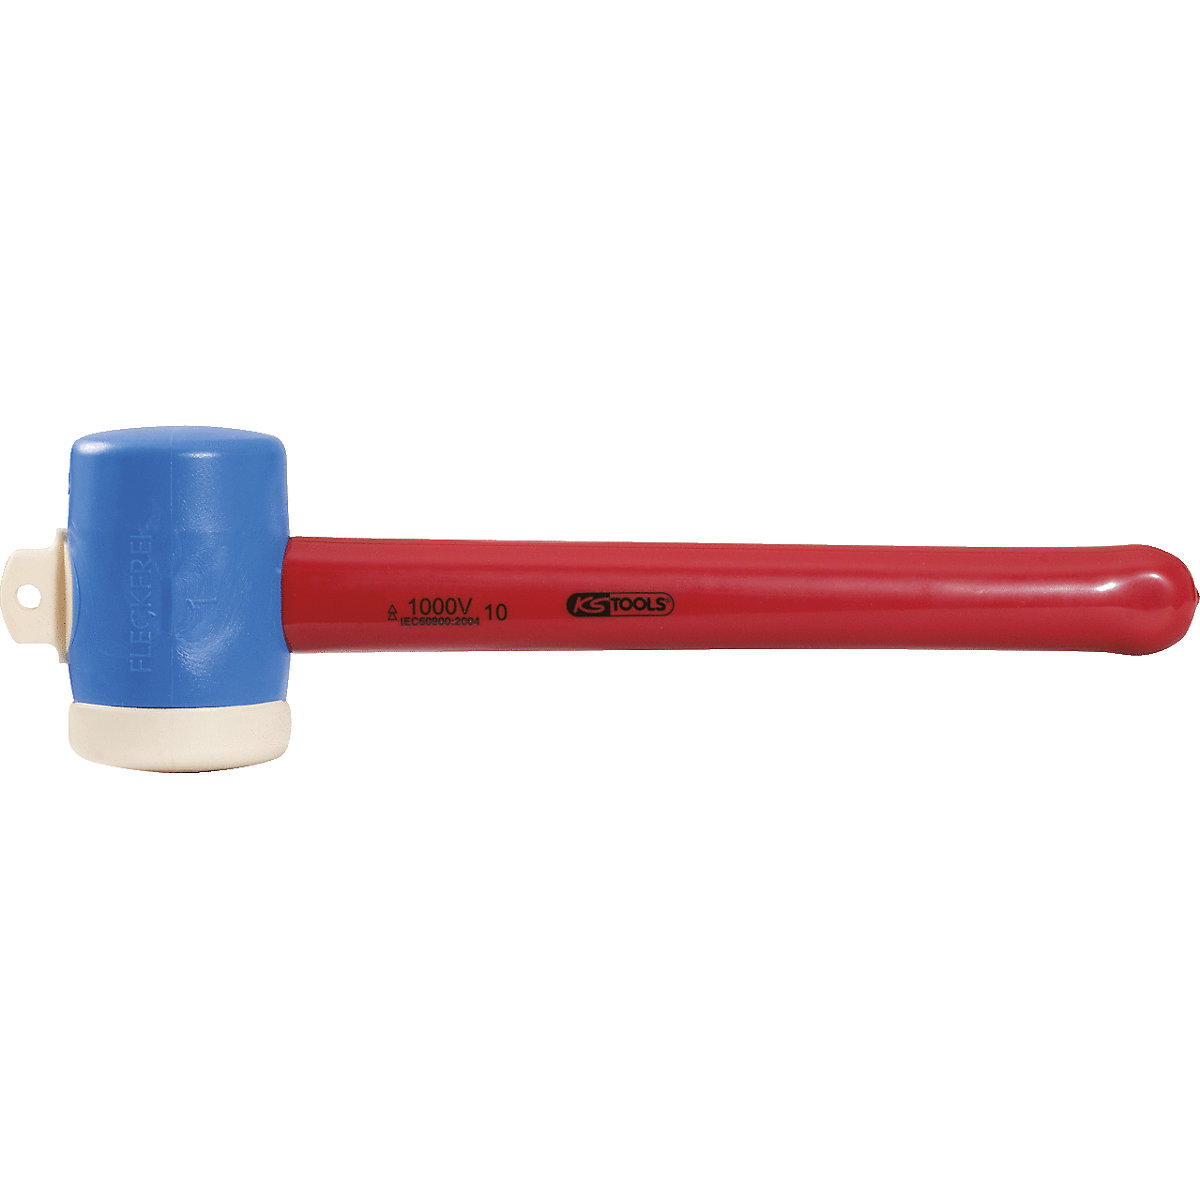 Kunststof hamer met beschermende isolatie – KS Tools